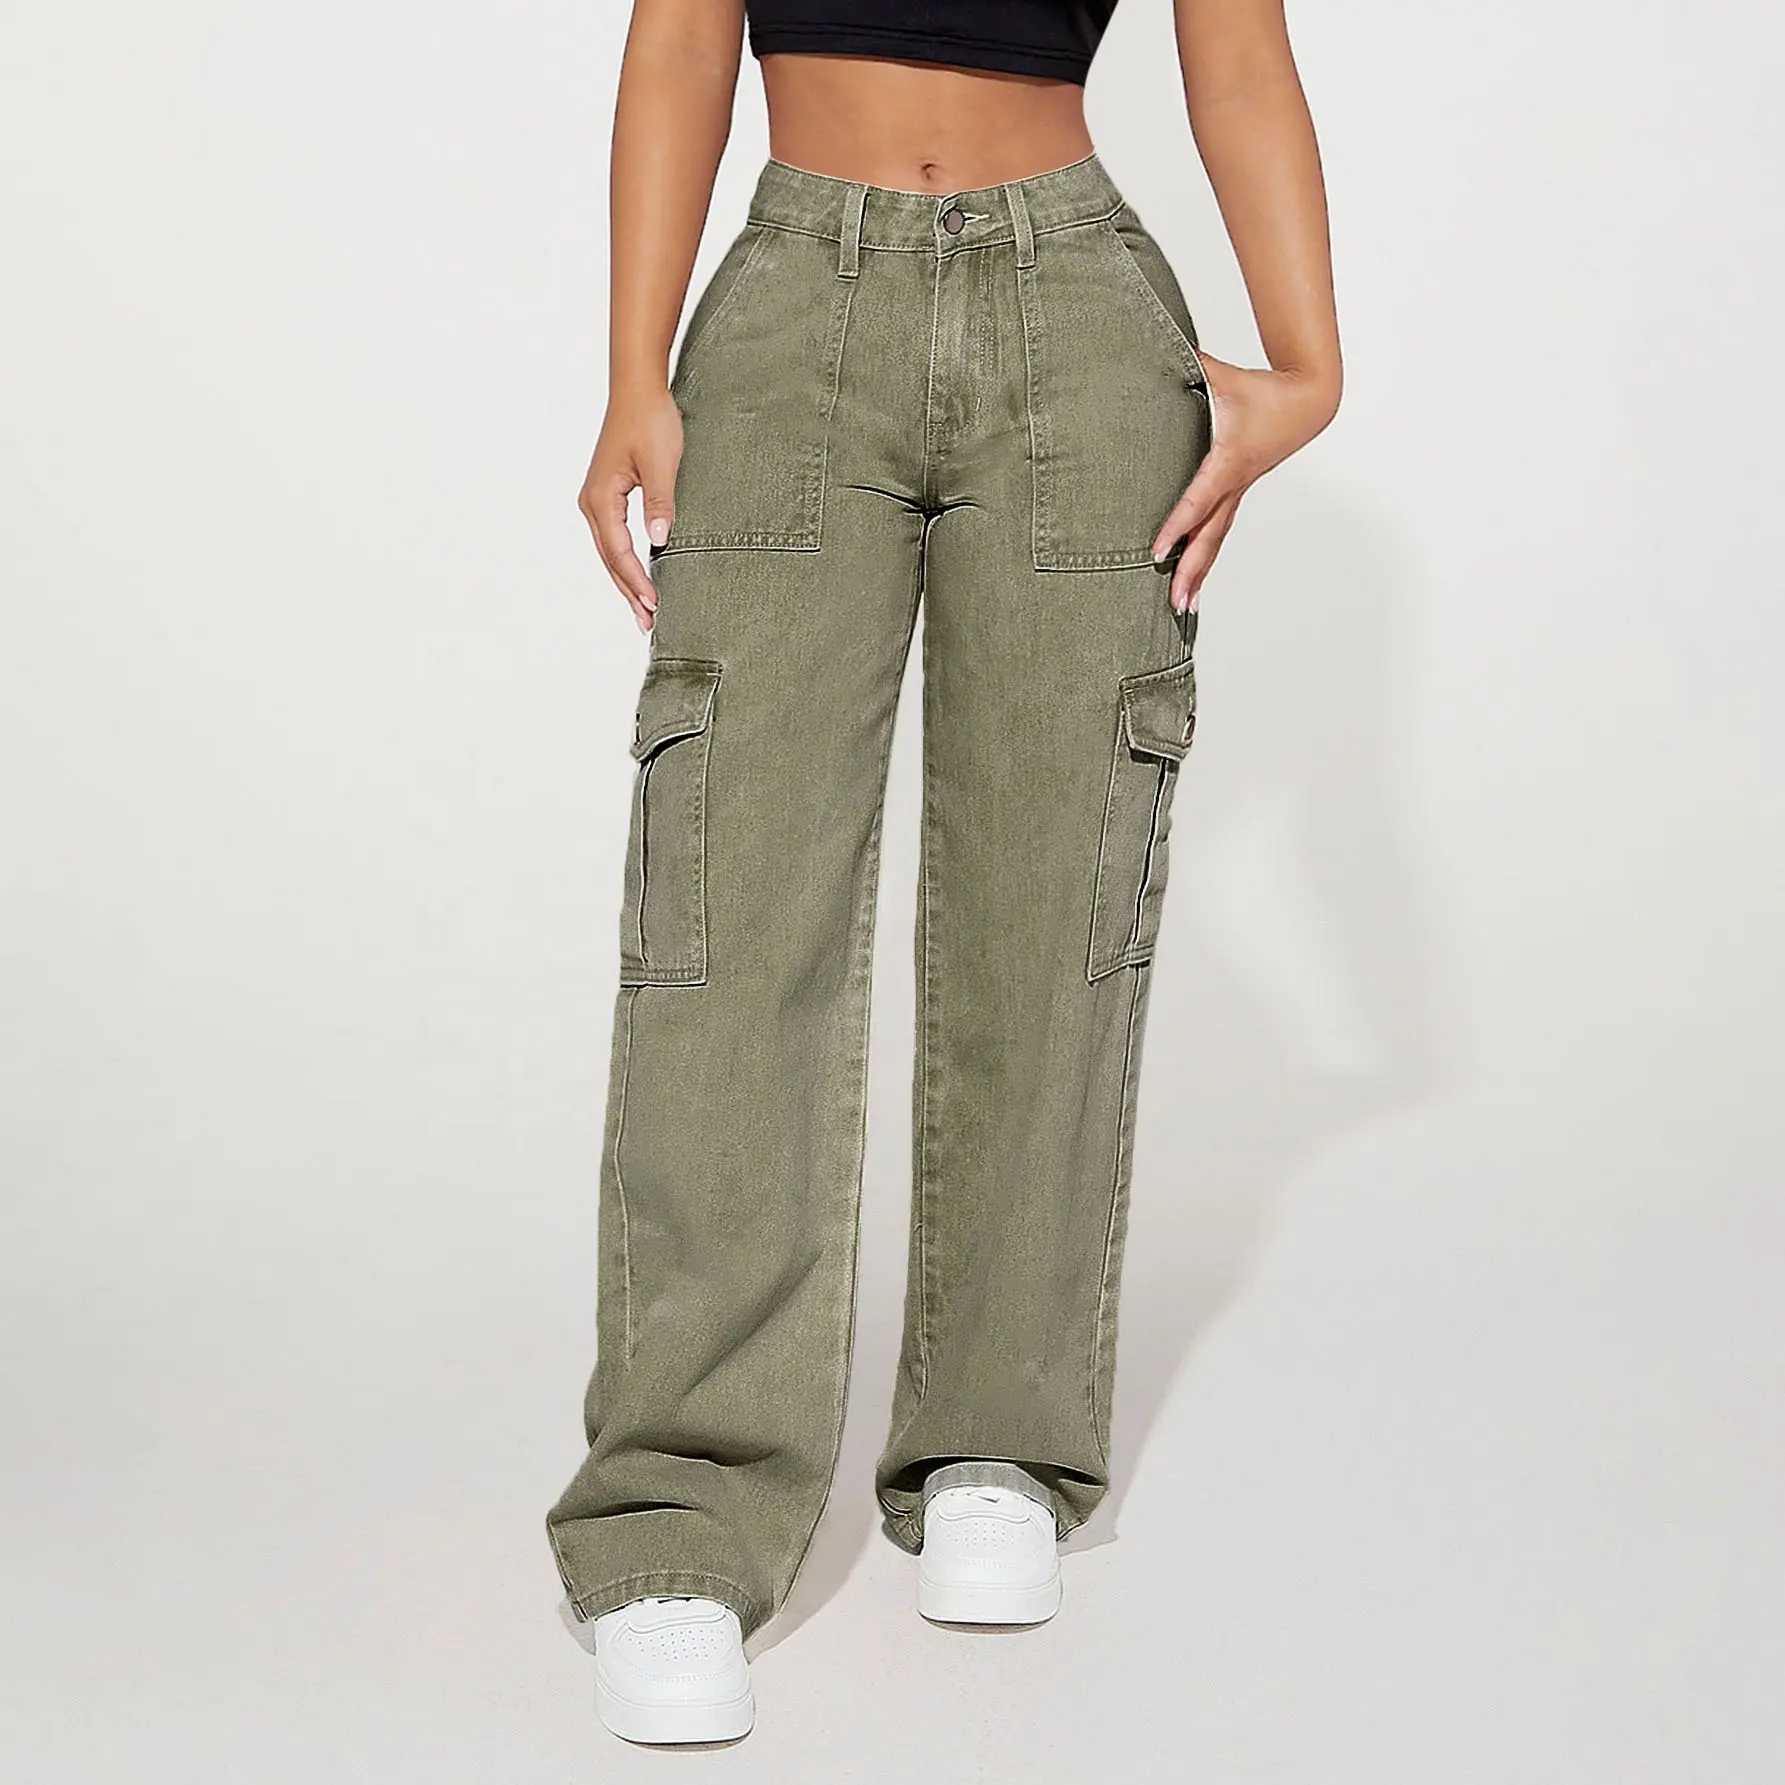 WJ276 ODM OEM women's jeans high waist flap pocket cargo denim jeans women's cargo pants jeans